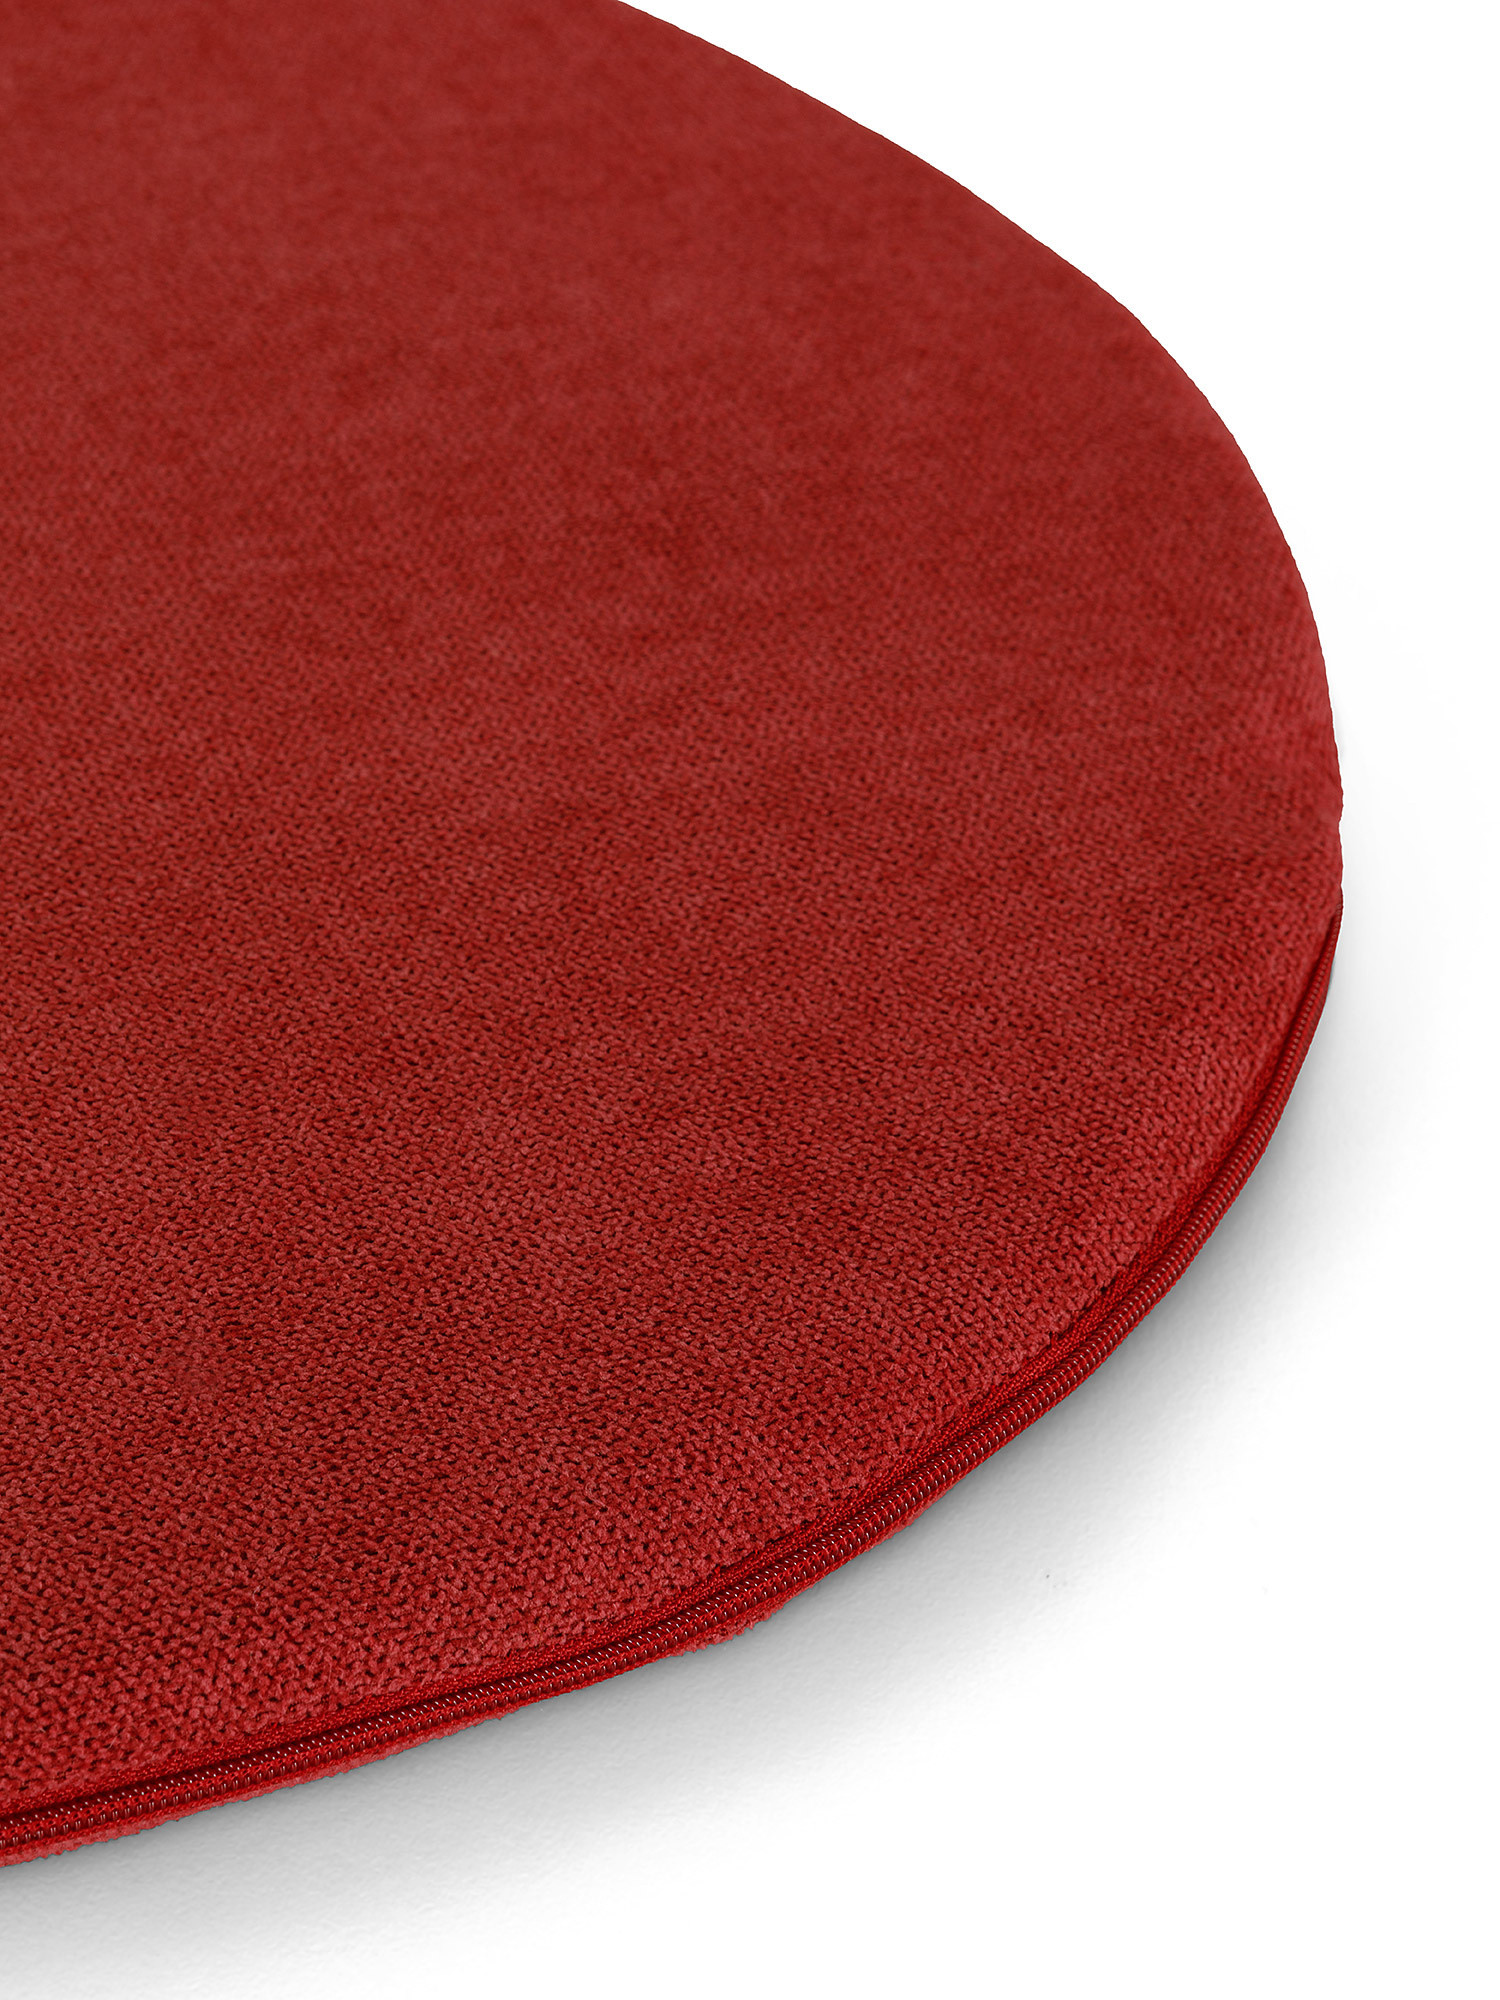 Cuscino da sedia in cotone tinta unita, Rosso, large image number 1